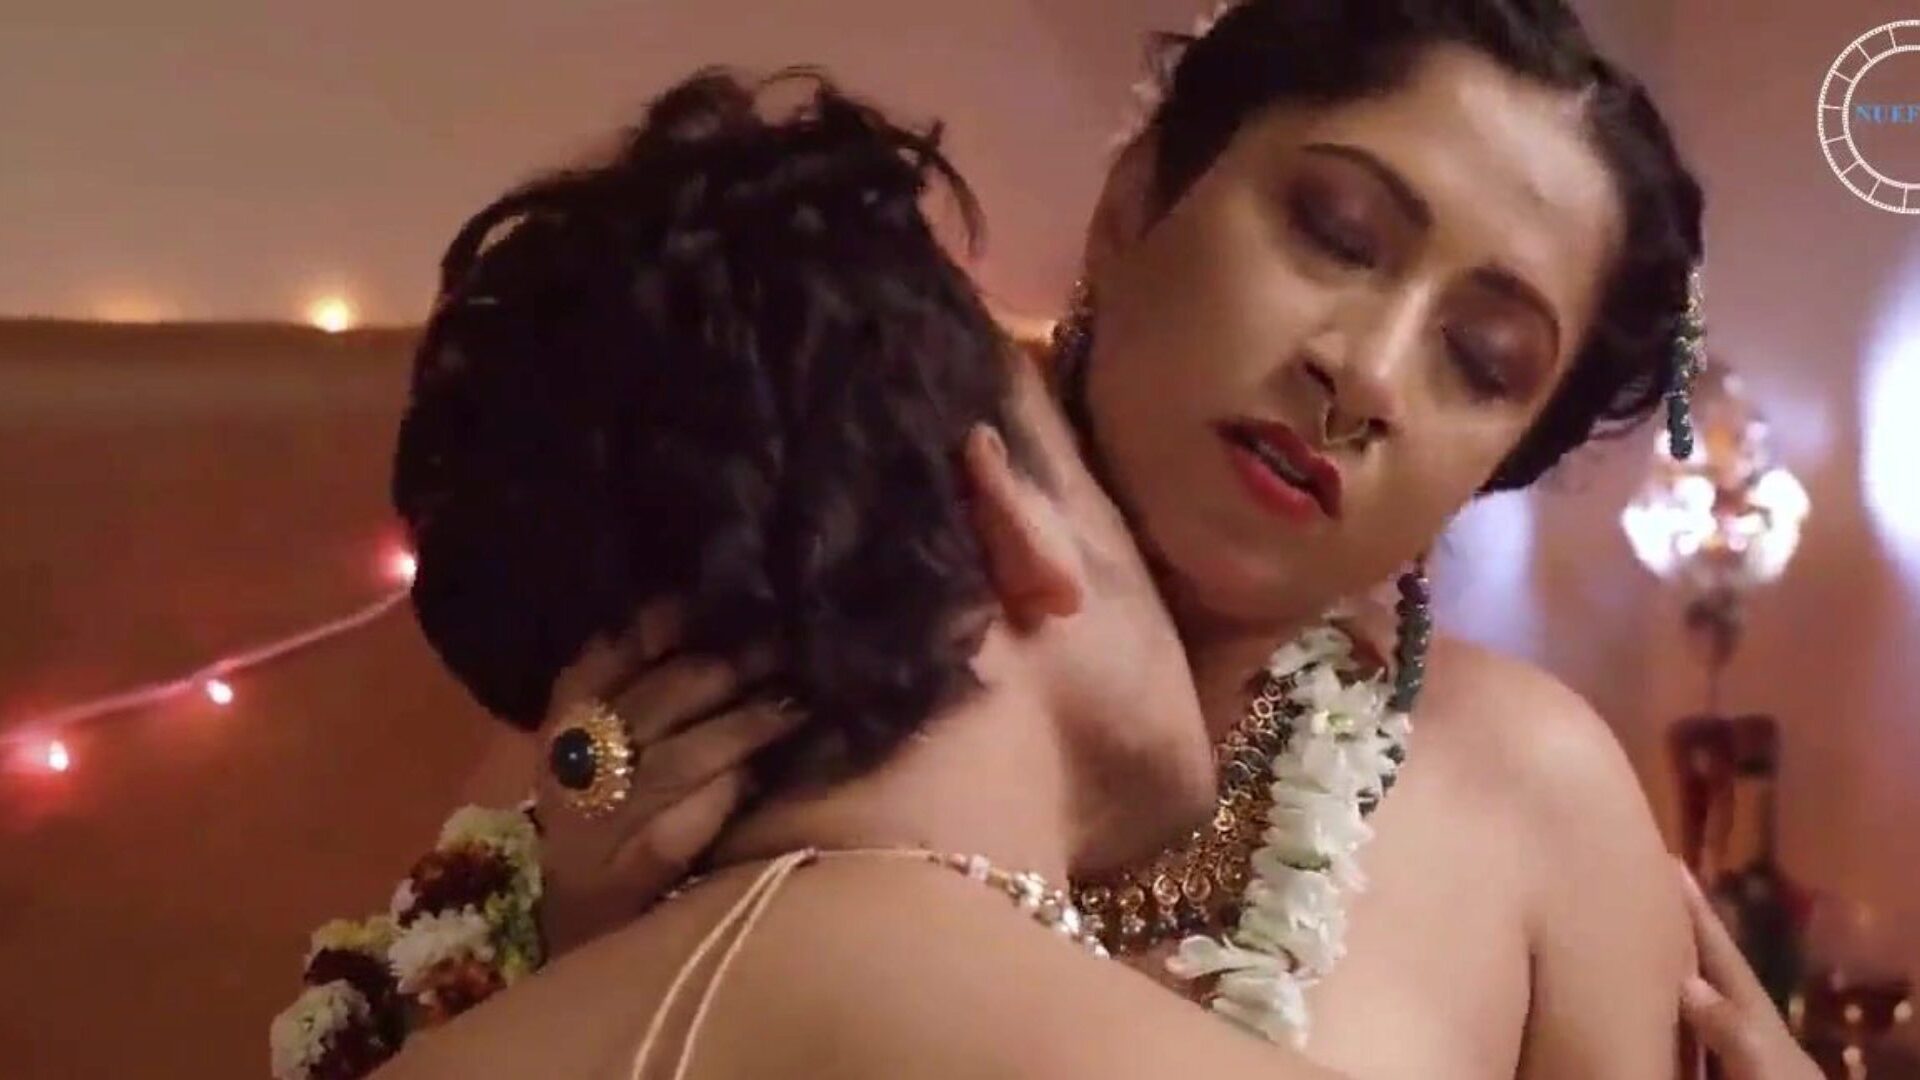 nghykana: büyük göt ve eş hd porno video 91 - xhamster xhamster'da ücretsiz nghykana tüp bağlanma film sahnesini izle, bangladeşli büyük eşek, karısı ve büyük göğüsleri hd pornografi video sahnelerinin en büyük bevy ile